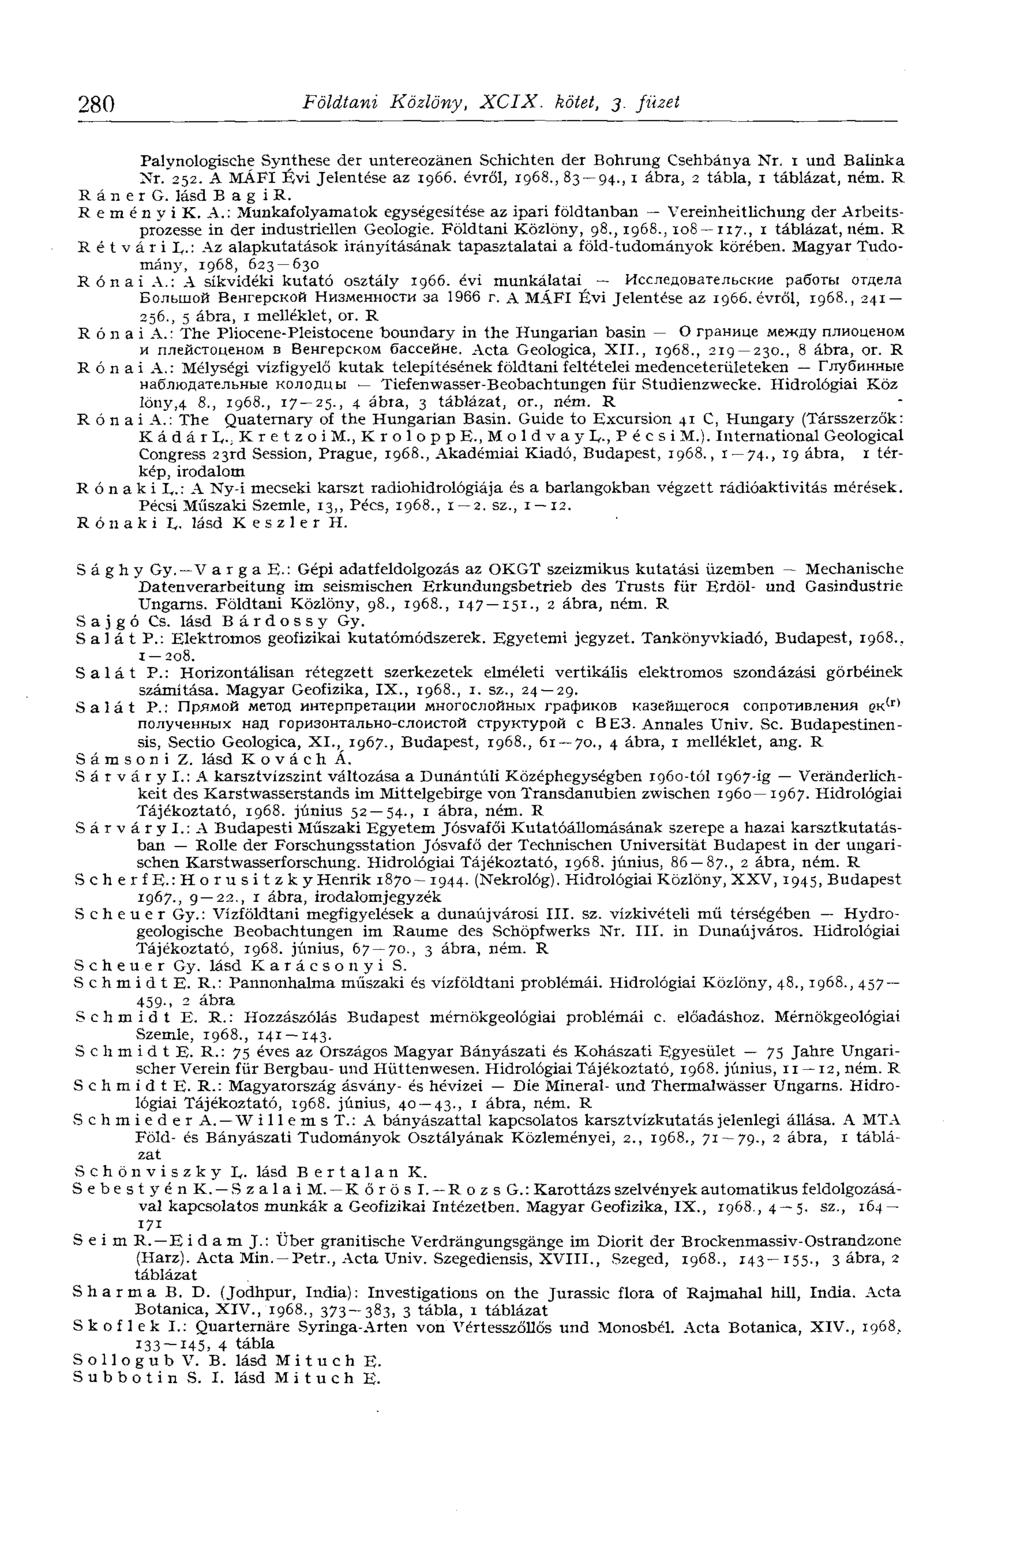 280 Földtani Közlöny, XCIX. kötet, 3. füzet Palynologische Synthese der untereozänen Schichten der Bohrung Csehbánya Nr. 1 und Baiinka Nr. 252. A MÁFI Évi Jelentése az 1966. évről, 1968., 83 94.